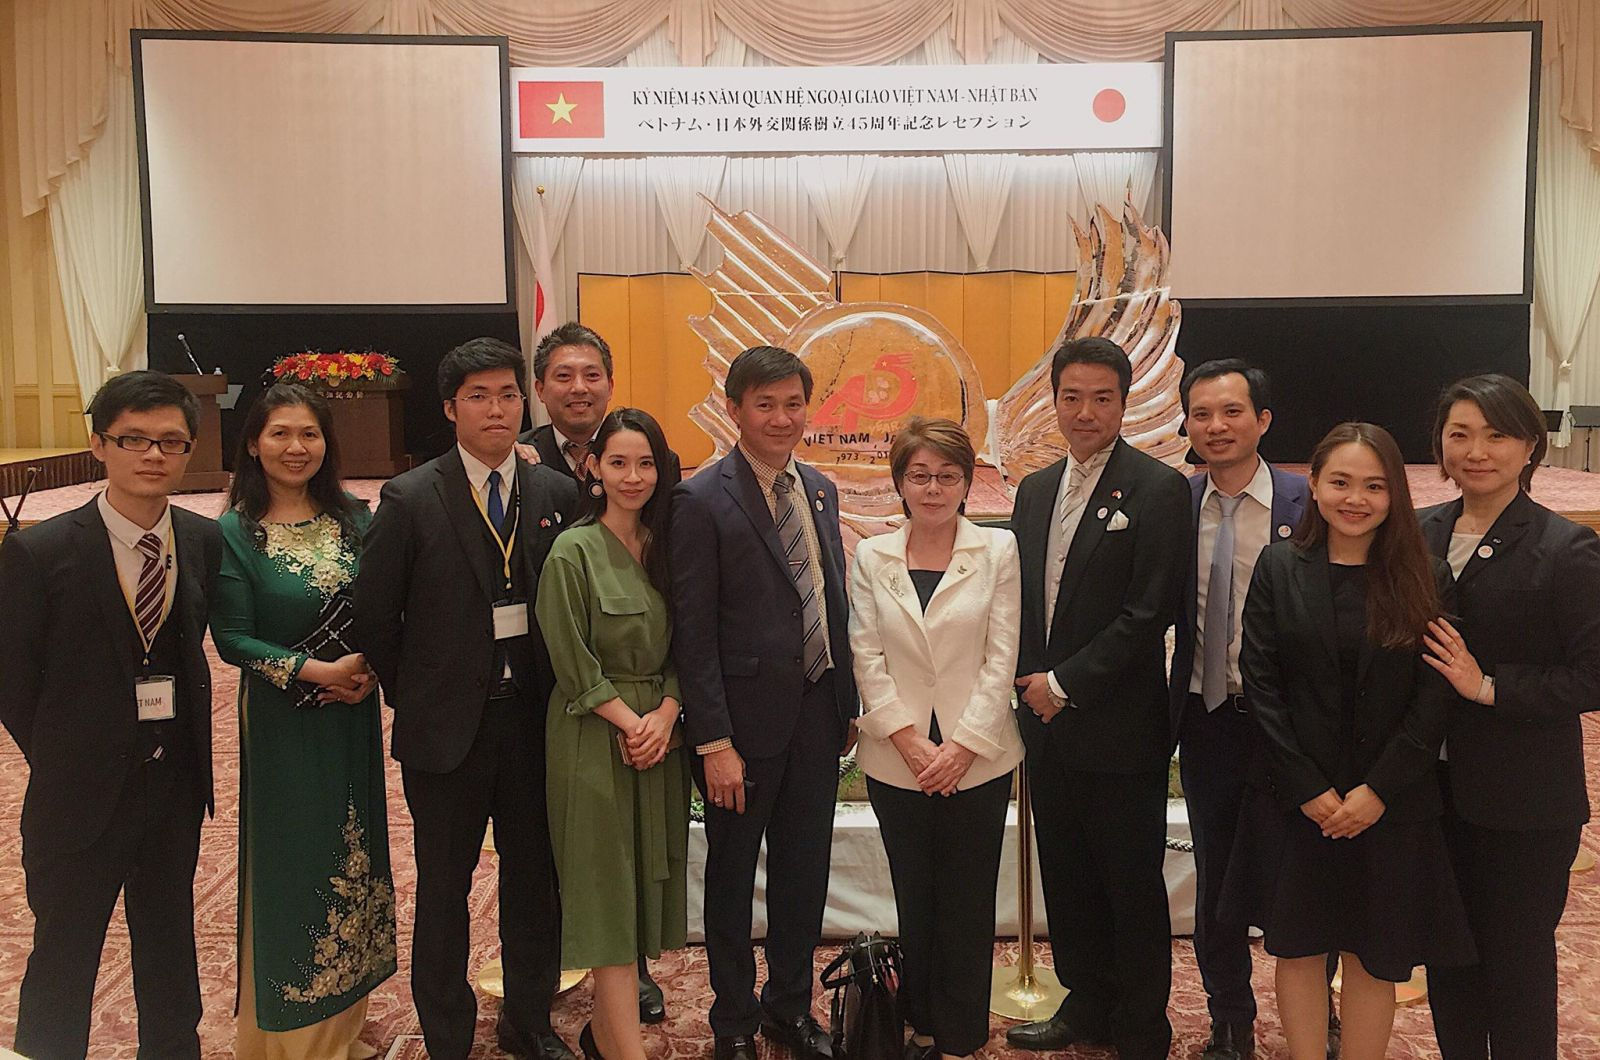 Mai Hoài Giang chụp ảnh lưu niệm cùng các đại biểu tại lễ kỷ niệm 45 năm quan hệ ngoại giao Việt nam - Nhật bản